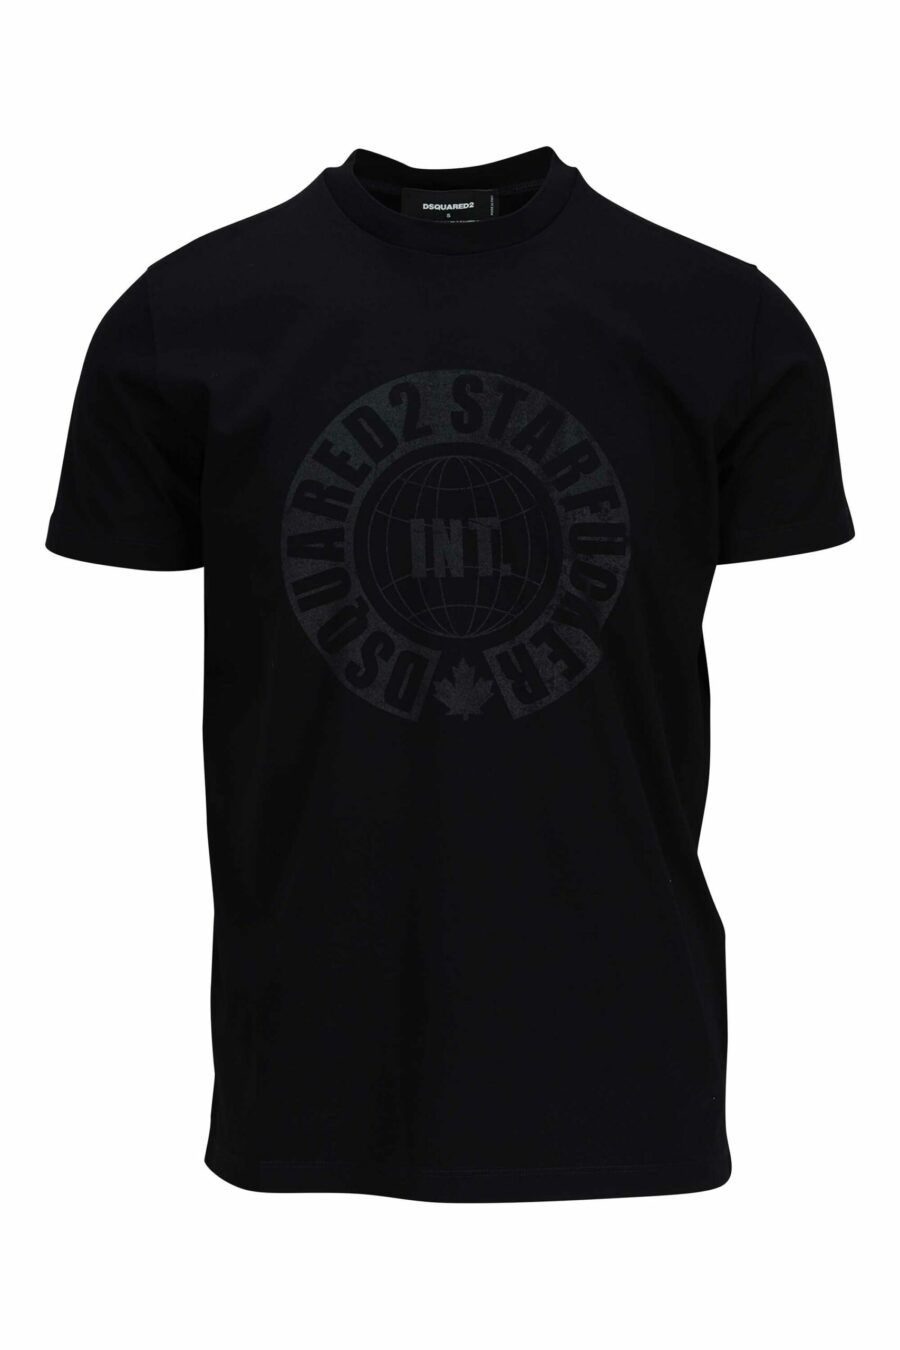 T-shirt preta com maxilogo monocromático redondo - 8054148086091 scaled